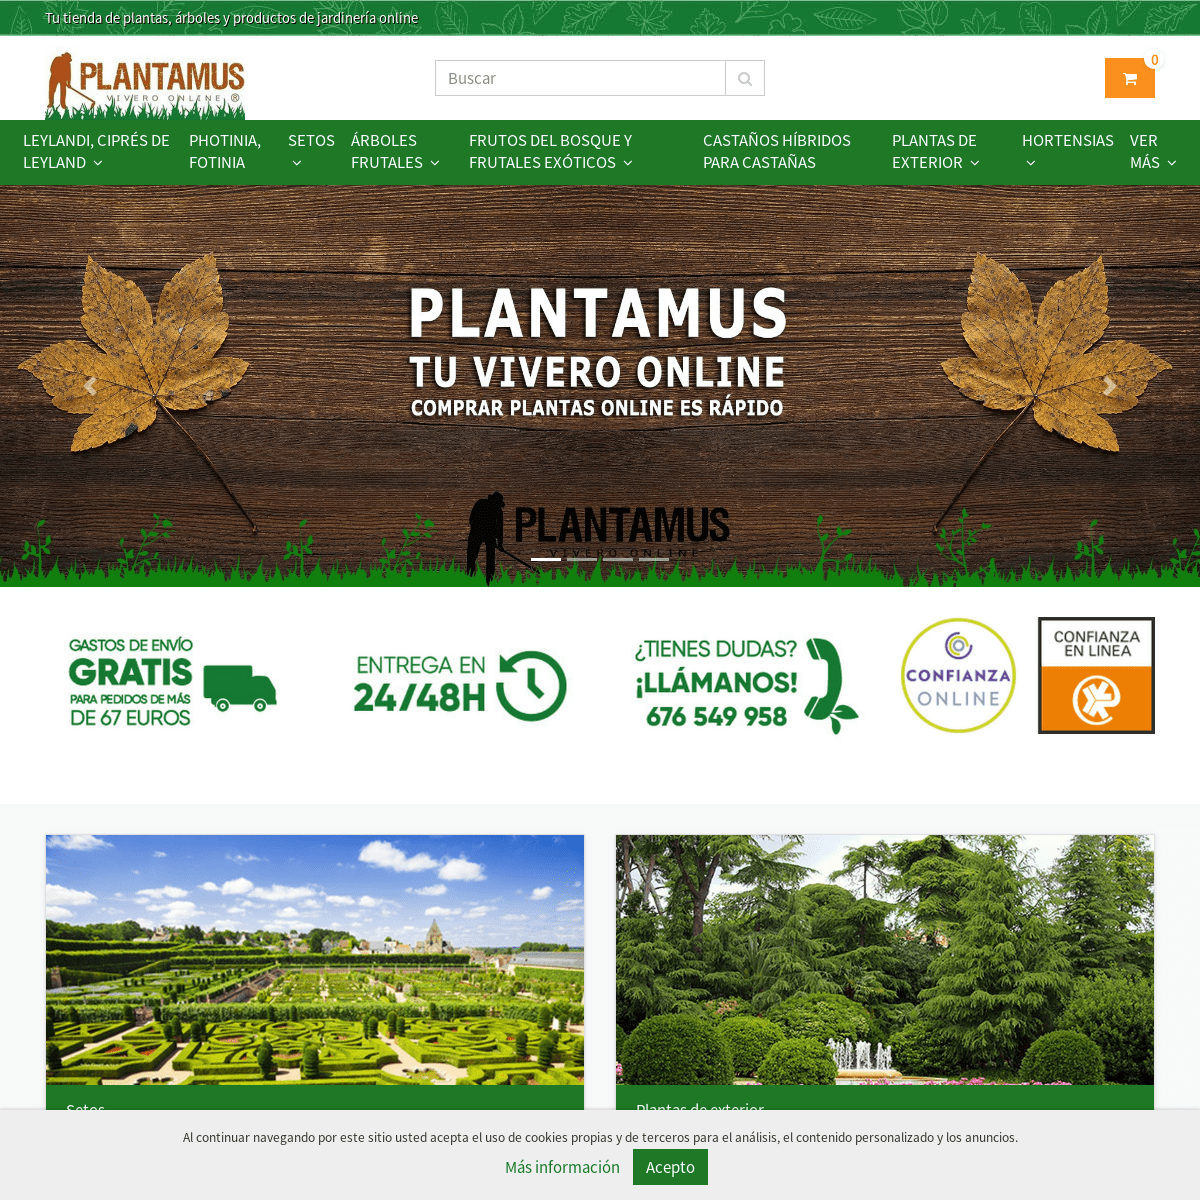 A complete backup of plantamus.com